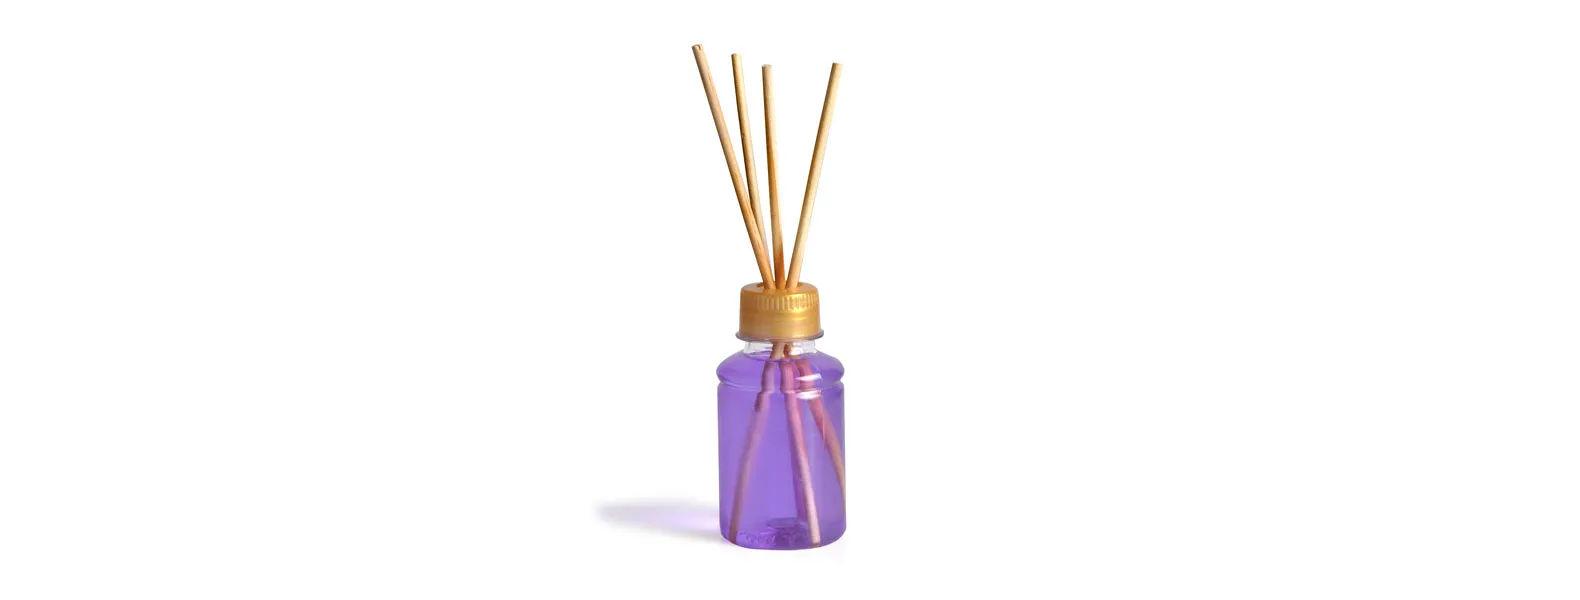 Kit bandeja, aromatizador e acessórios. Composto por bandeja oval em bambu; garrafa transparente em PET; porta-retrato em alumínio; aromatizador de ambiente com fragrância de lavanda.